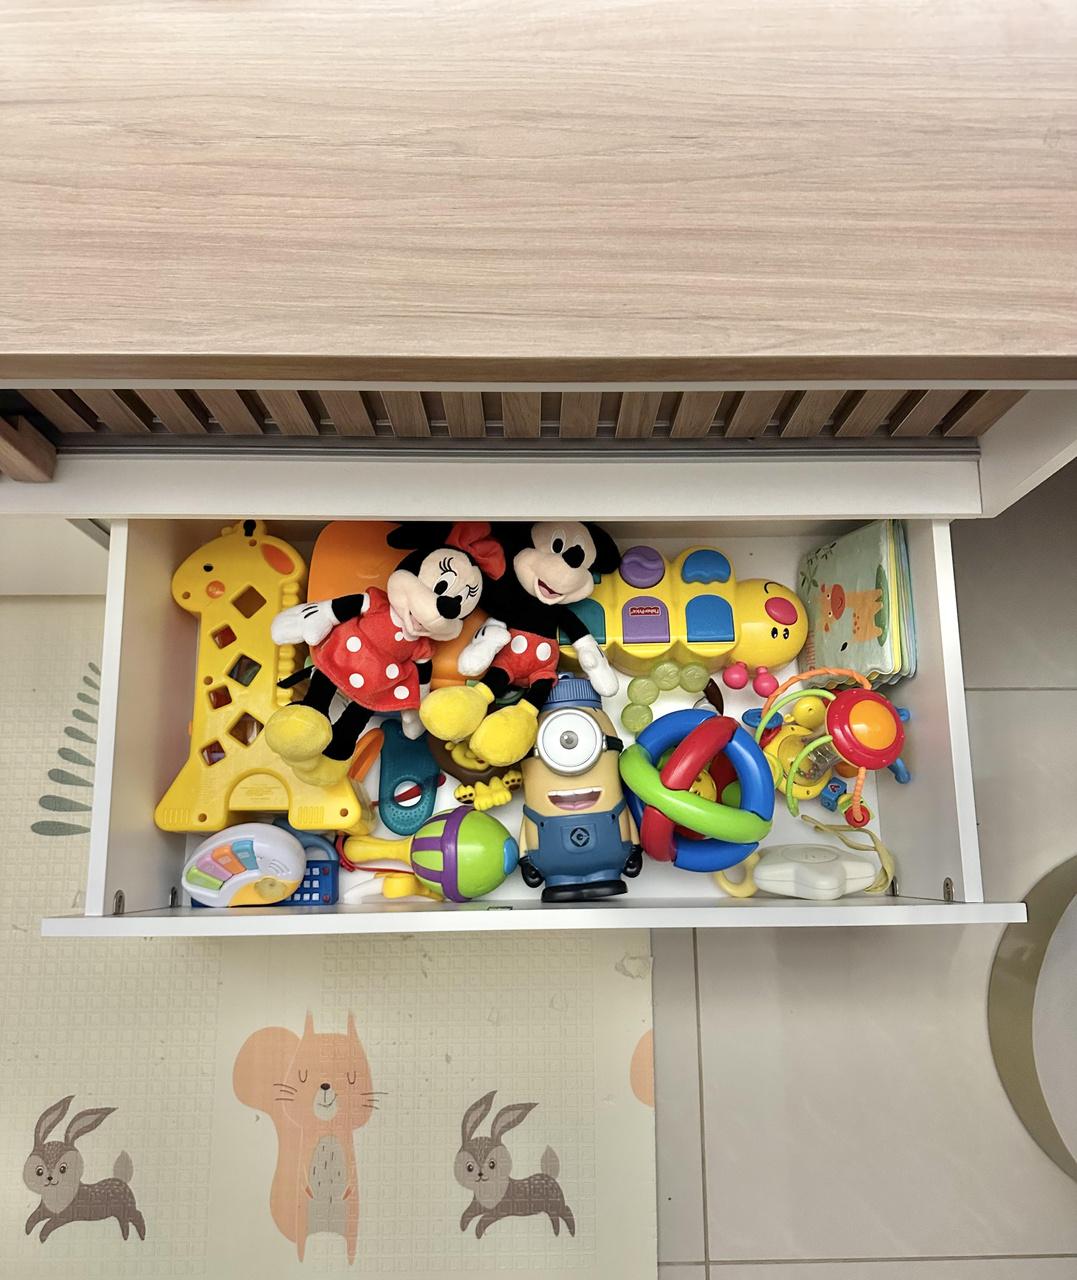 Gaveta no rack de tv armazena brinquedos e ajuda a manter organização